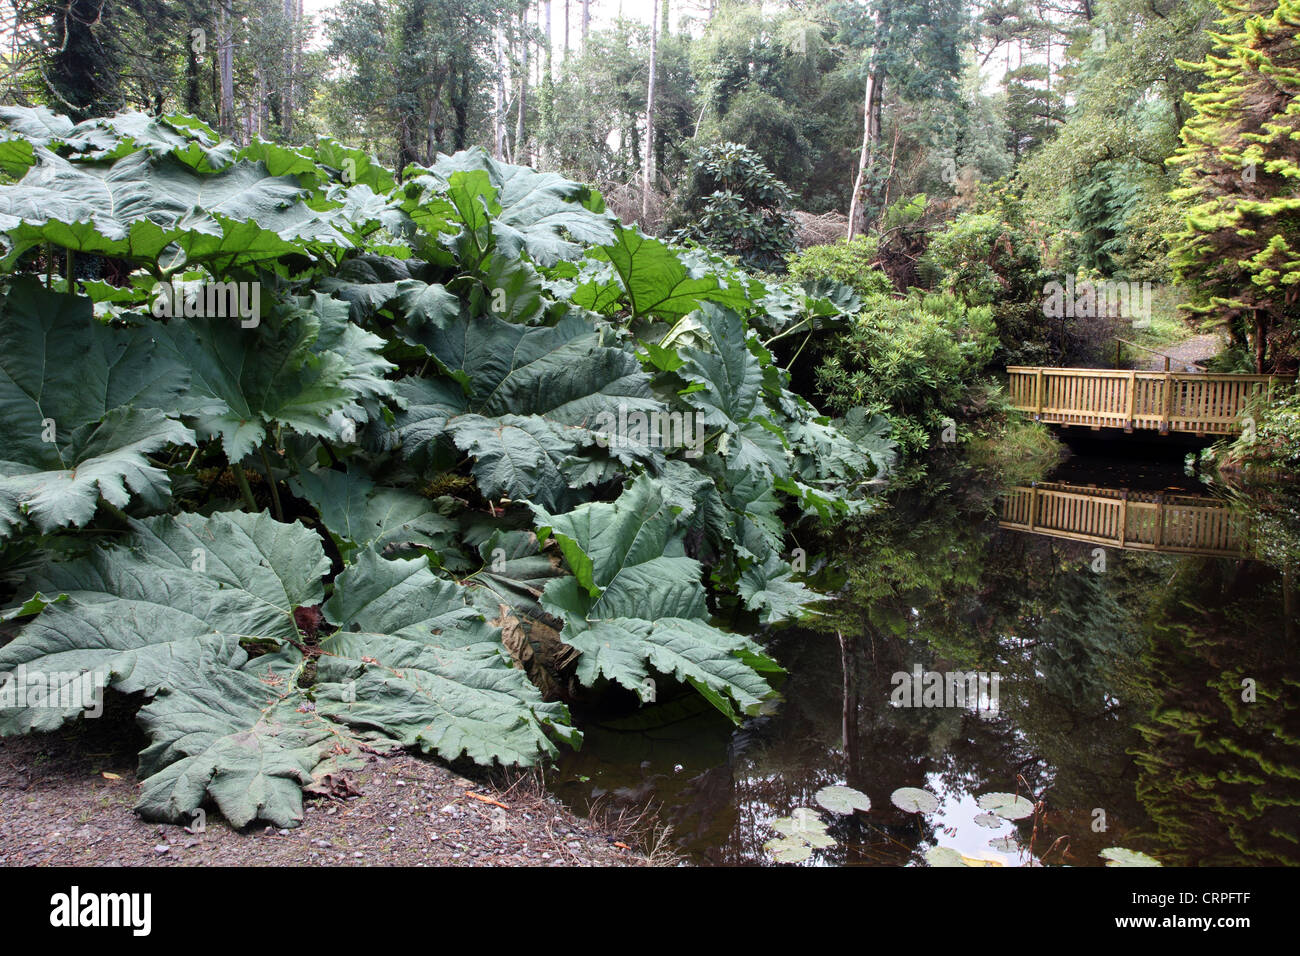 Gunnera Teich in Kells Bay Gardens, exotischen Gärten des 19. Jahrhunderts restauriert. Stockfoto